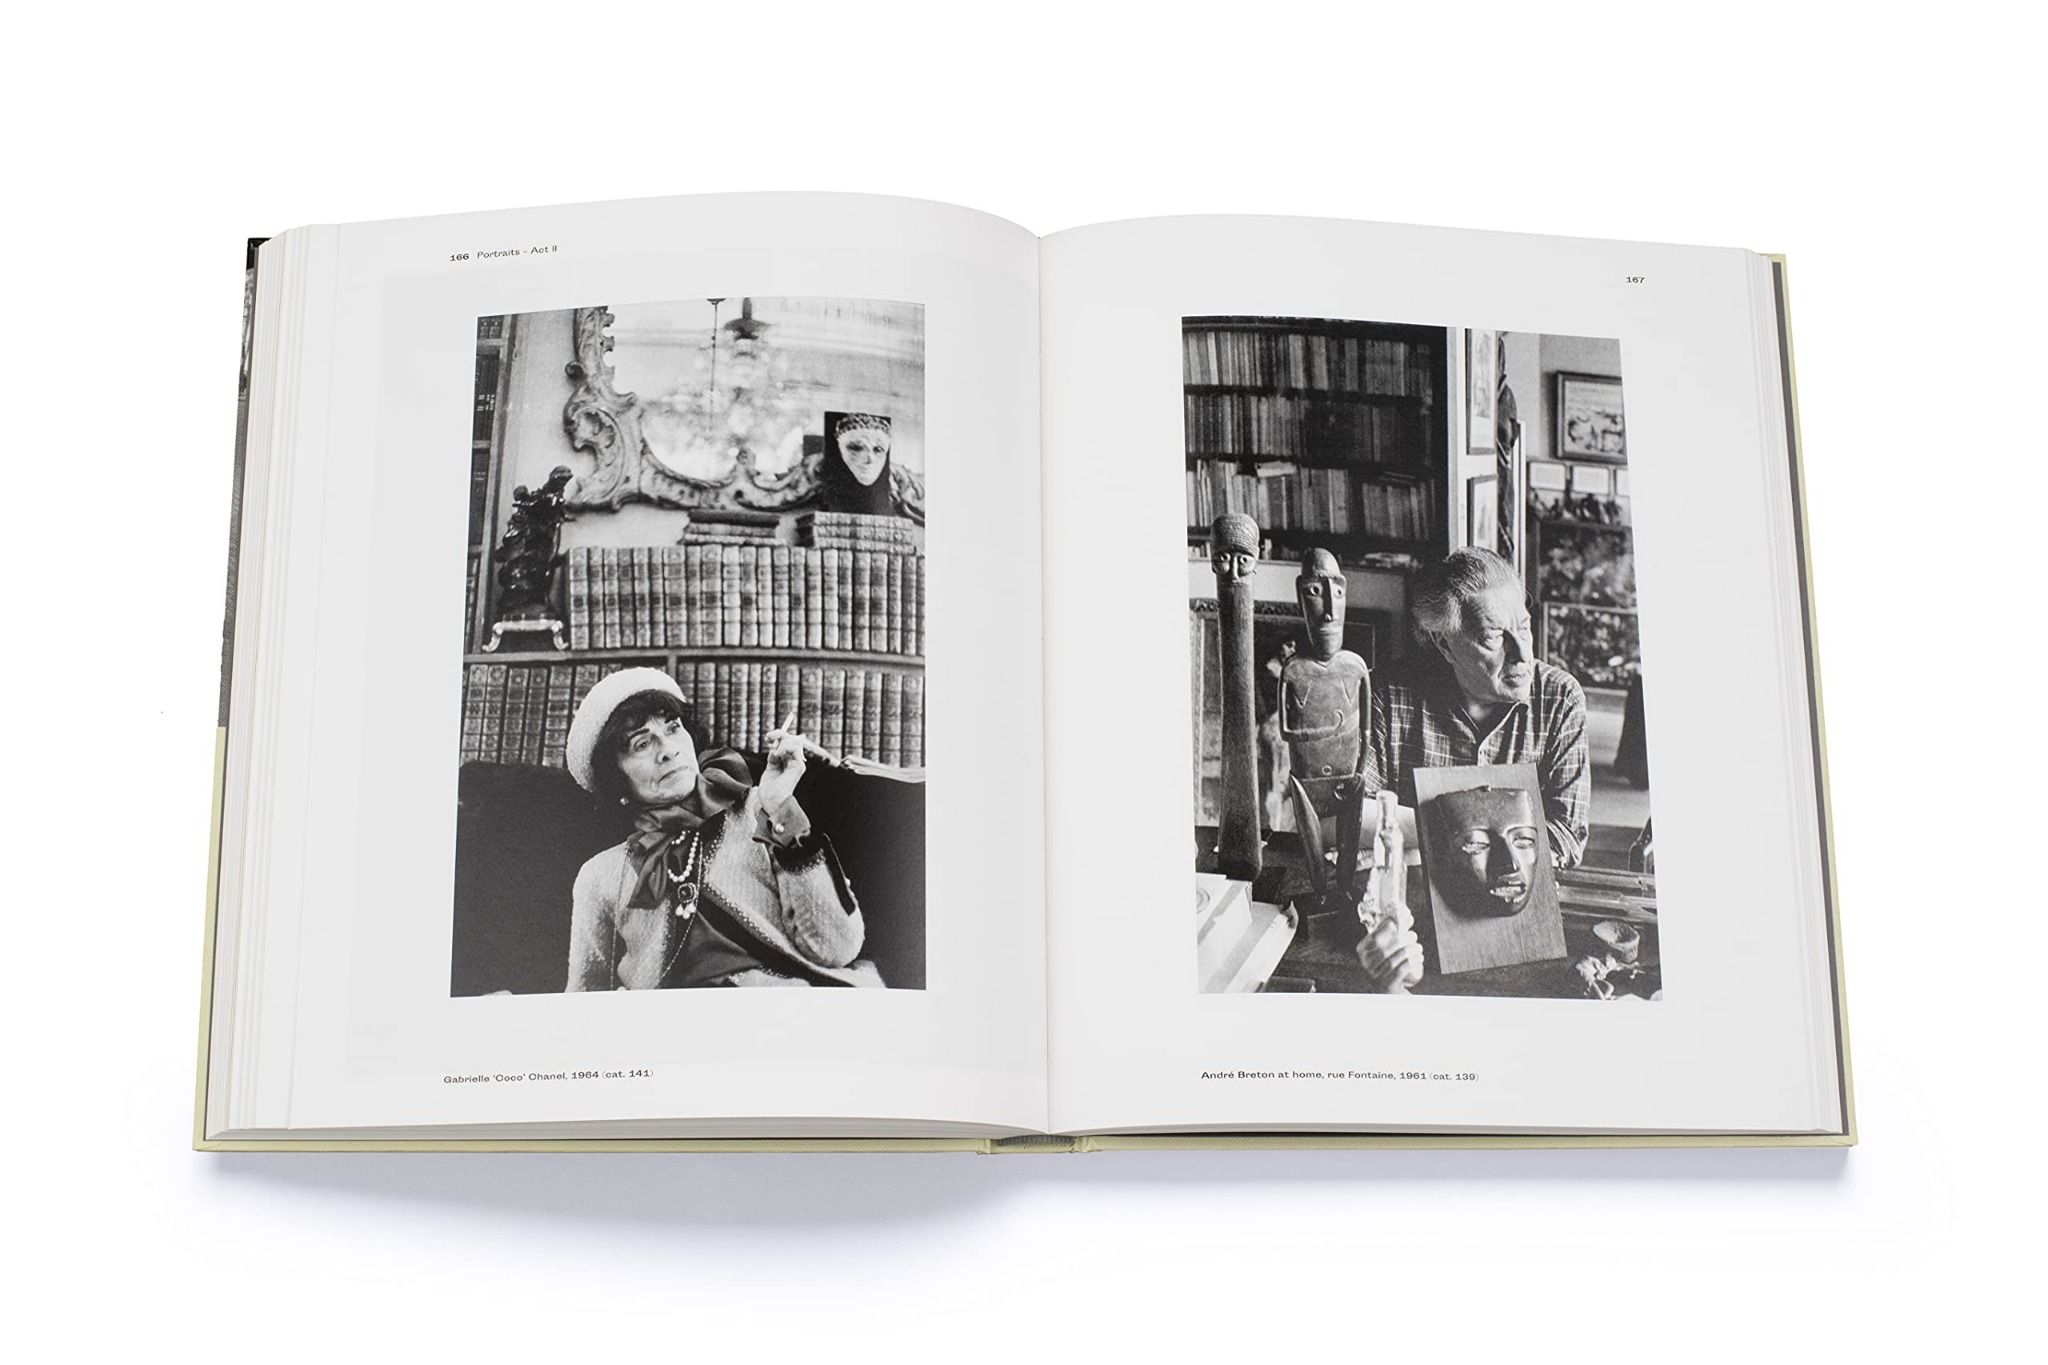  Henri Cartier-Bresson: Paris Revisited_Anne de Mondenard_9780500545423_ Thames & Hudson Ltd 